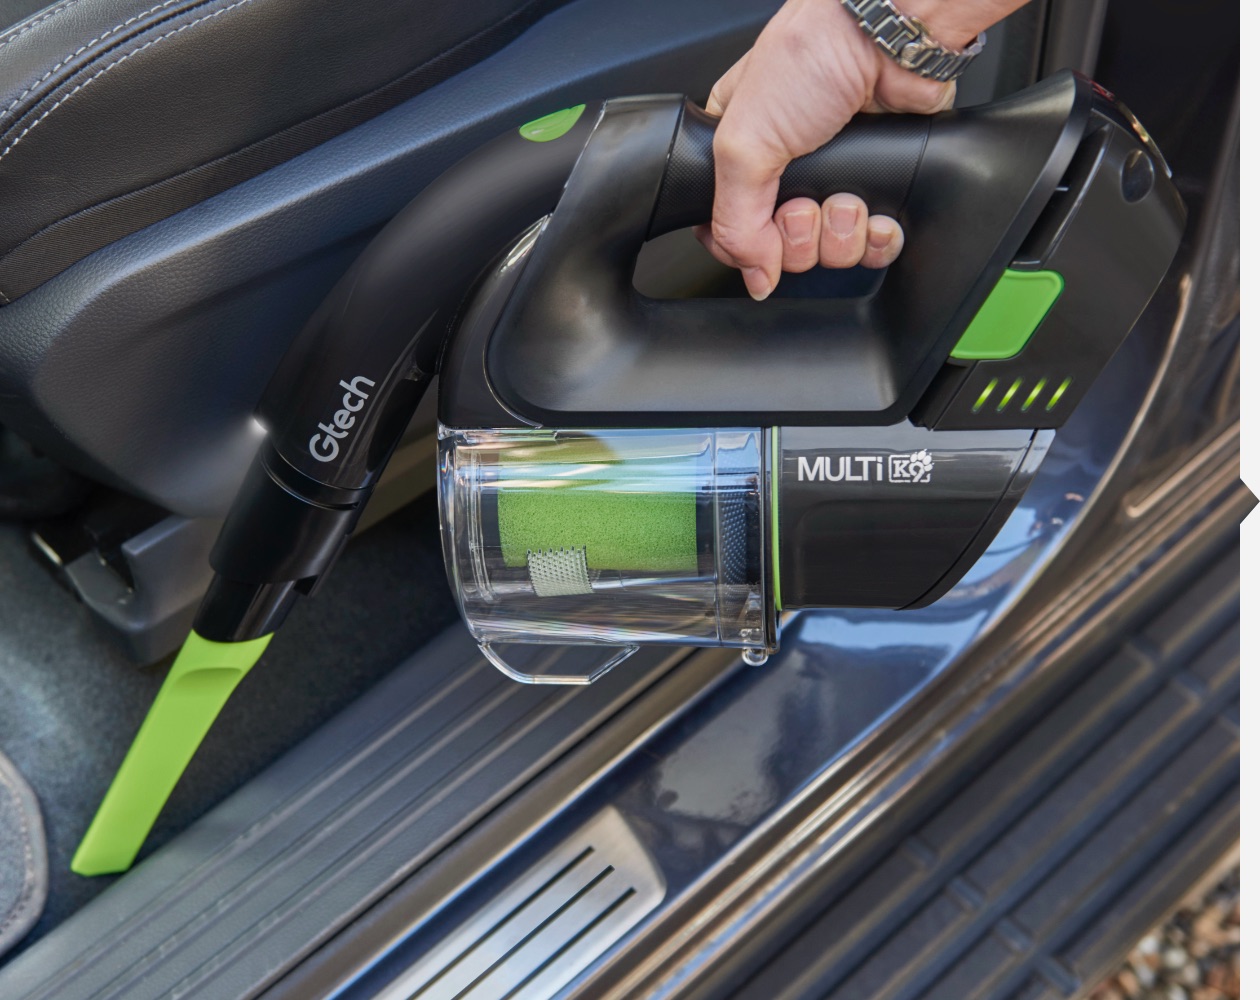 Multi K9 cordless handheld car vacuum cleaner